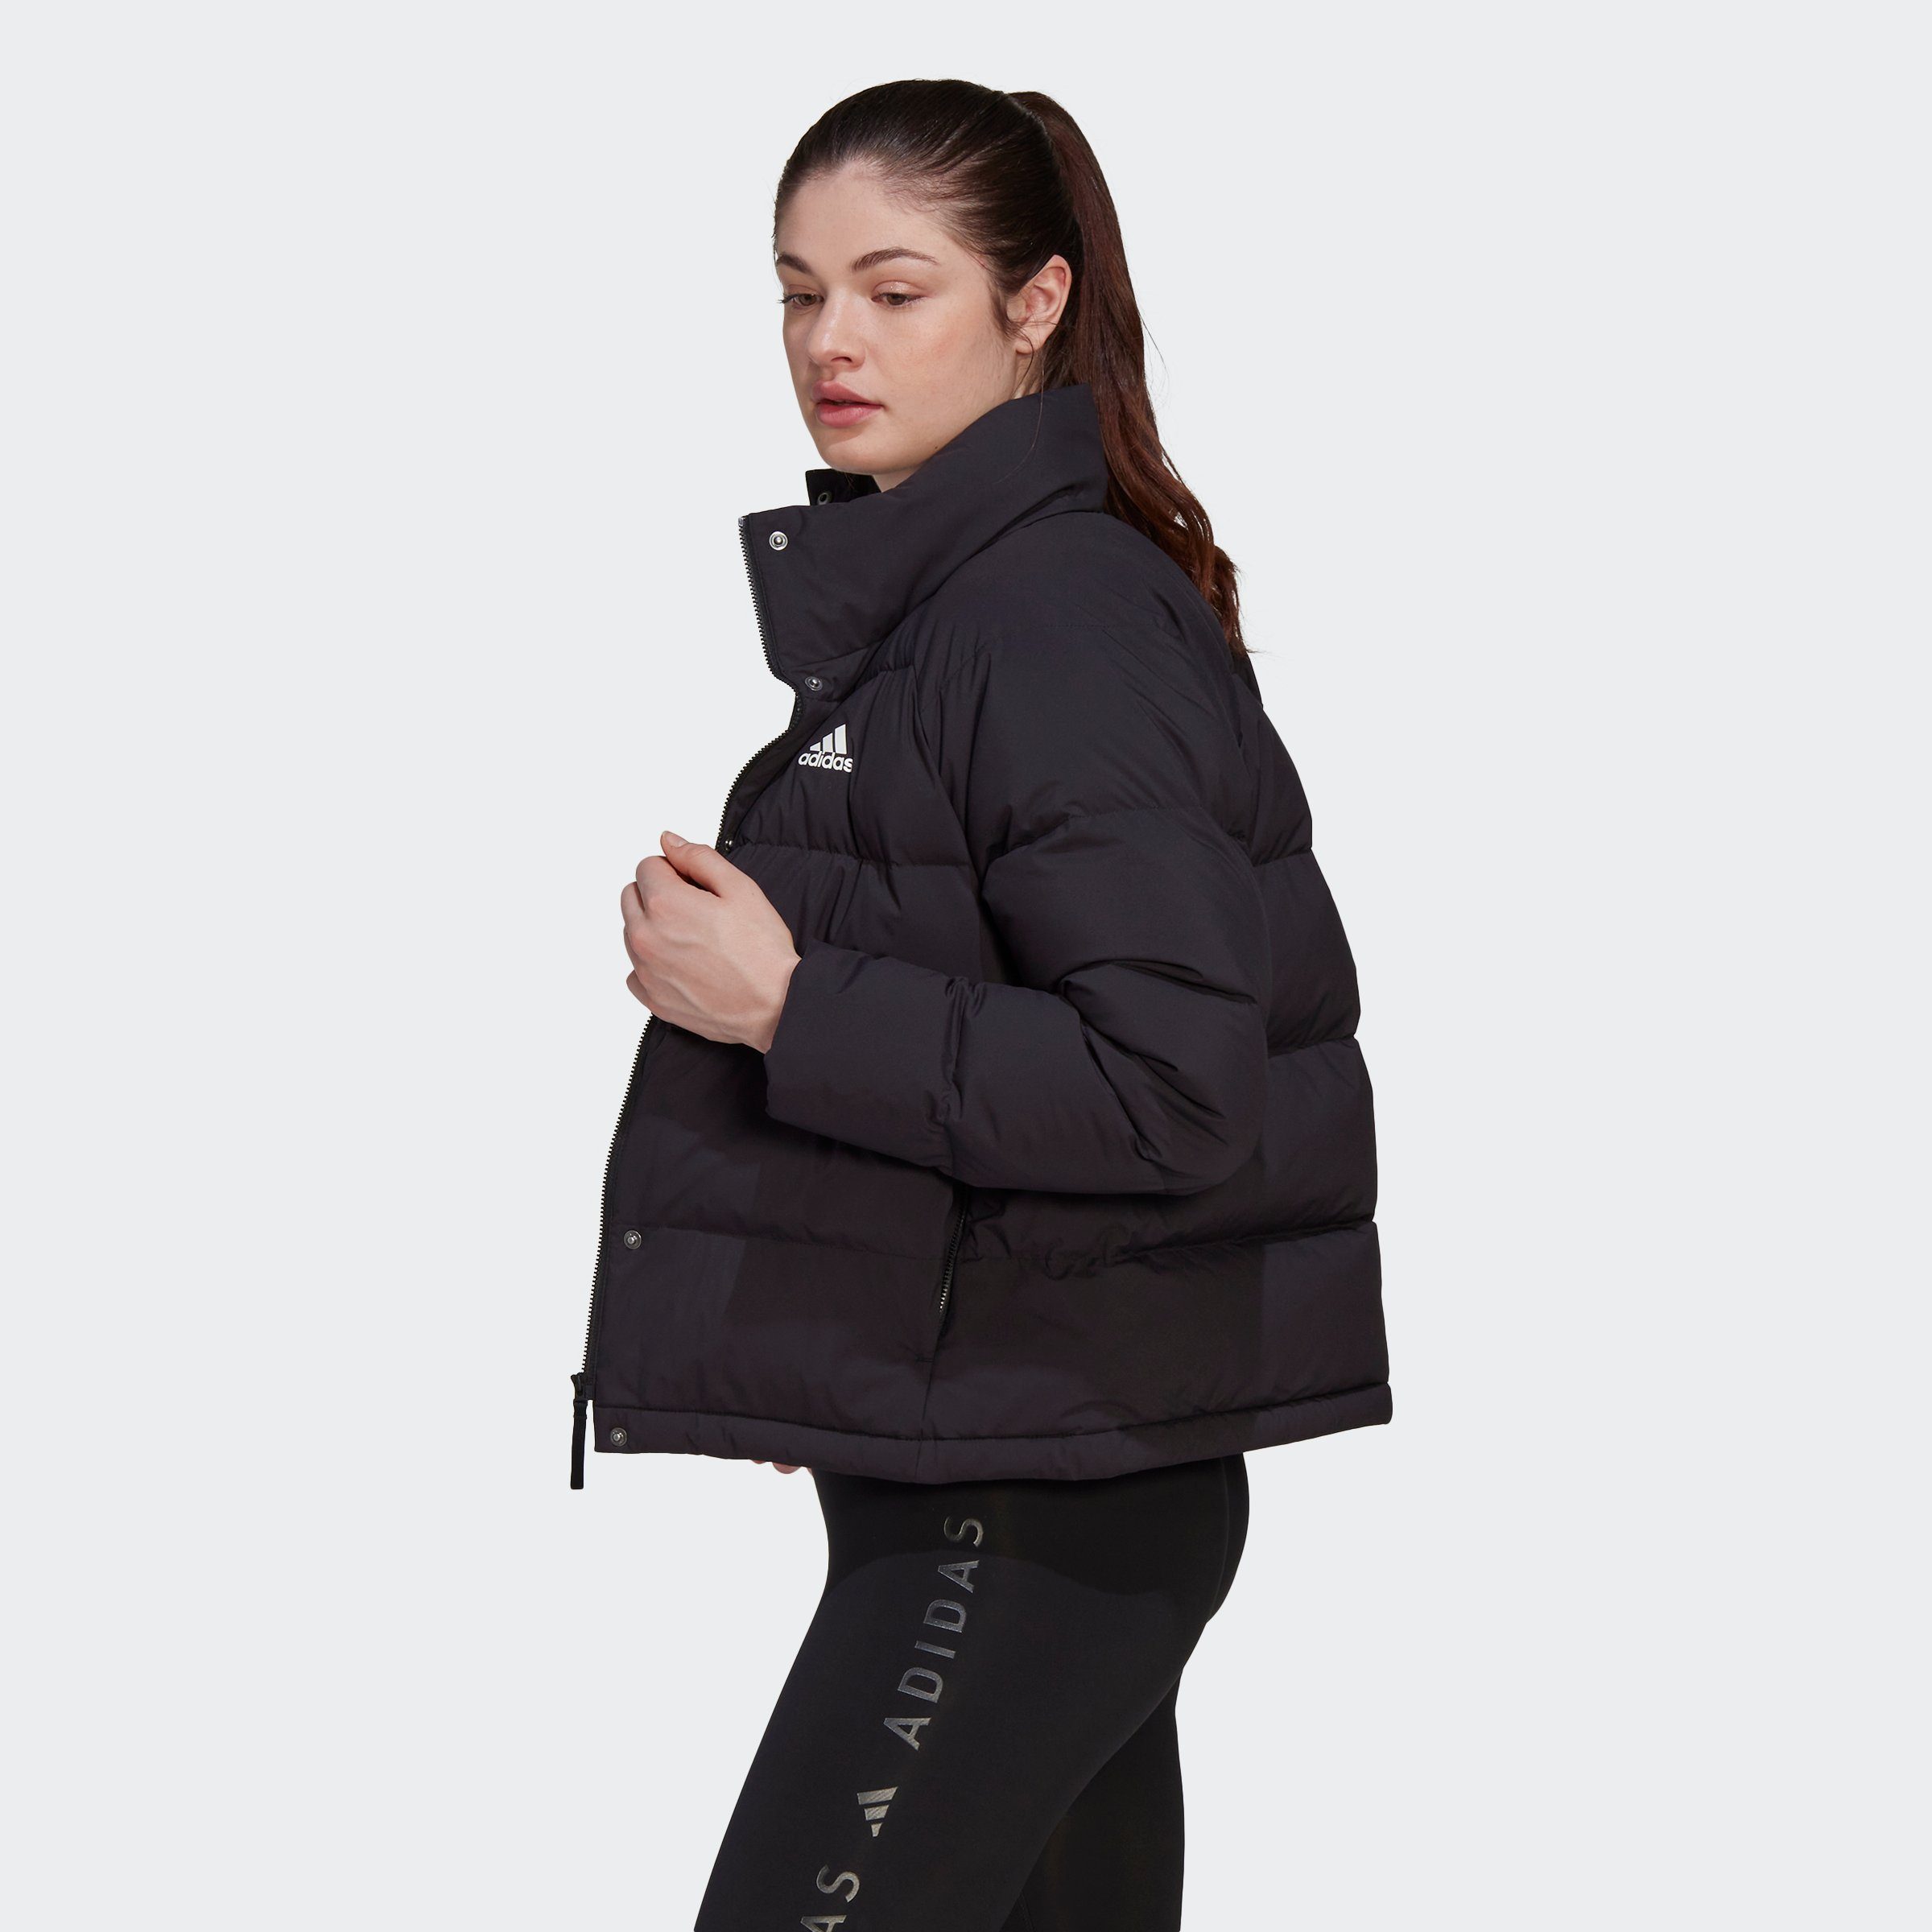 RELAXED DAUNENJACKE Sportswear schwarz Outdoorjacke HELIONIC adidas